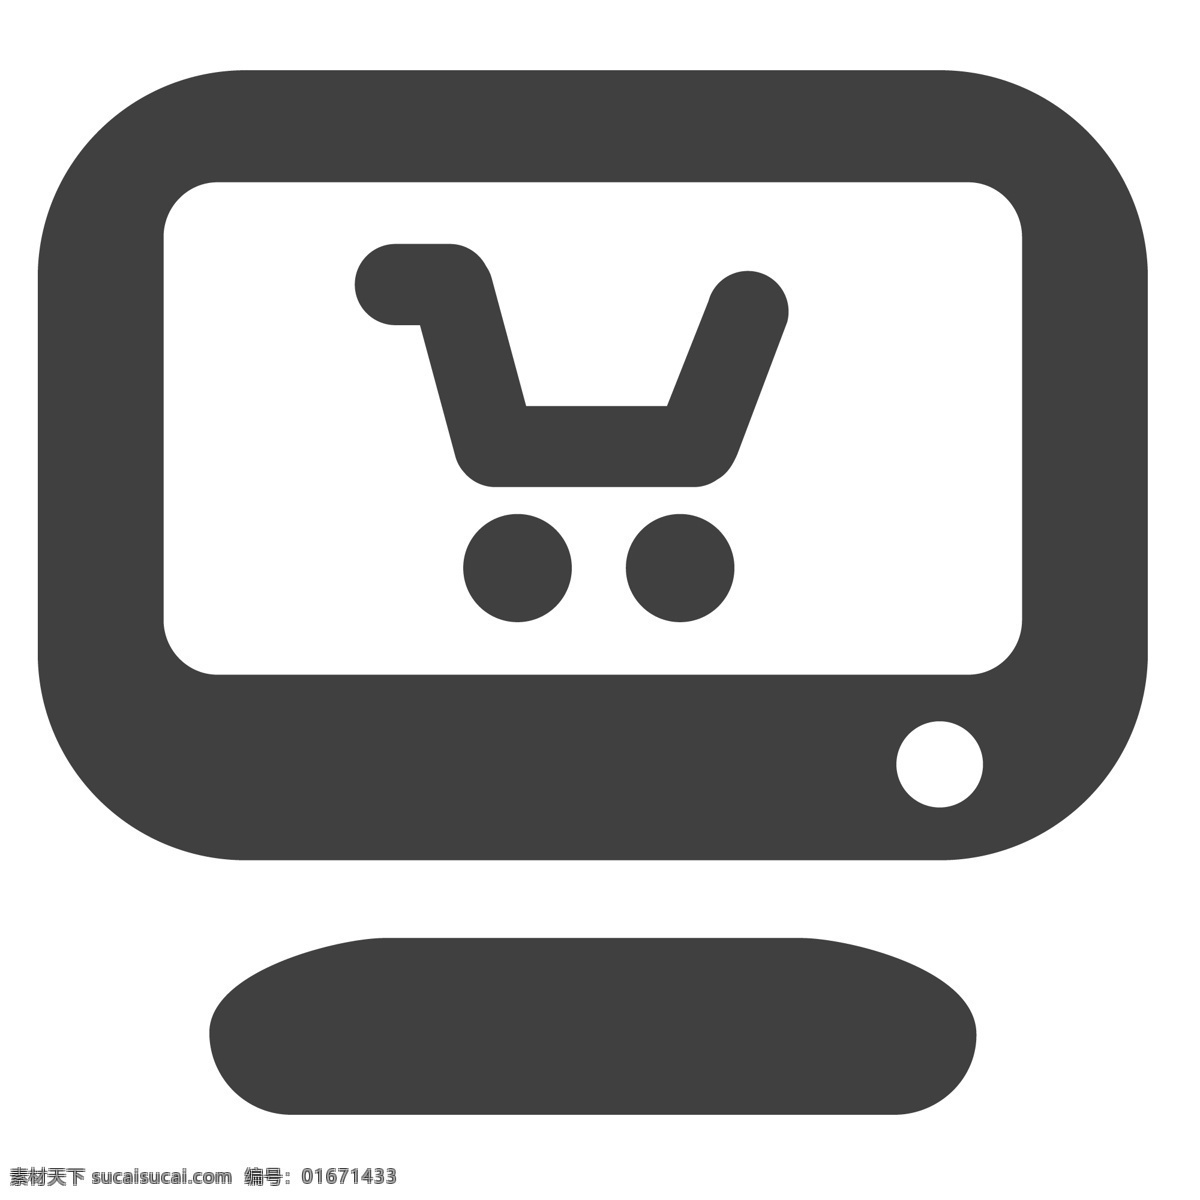 黑色 的卡 通 电视 电子 购物车 生活图标 卡通图标 黑色的图标 手机图标 智能图标设计